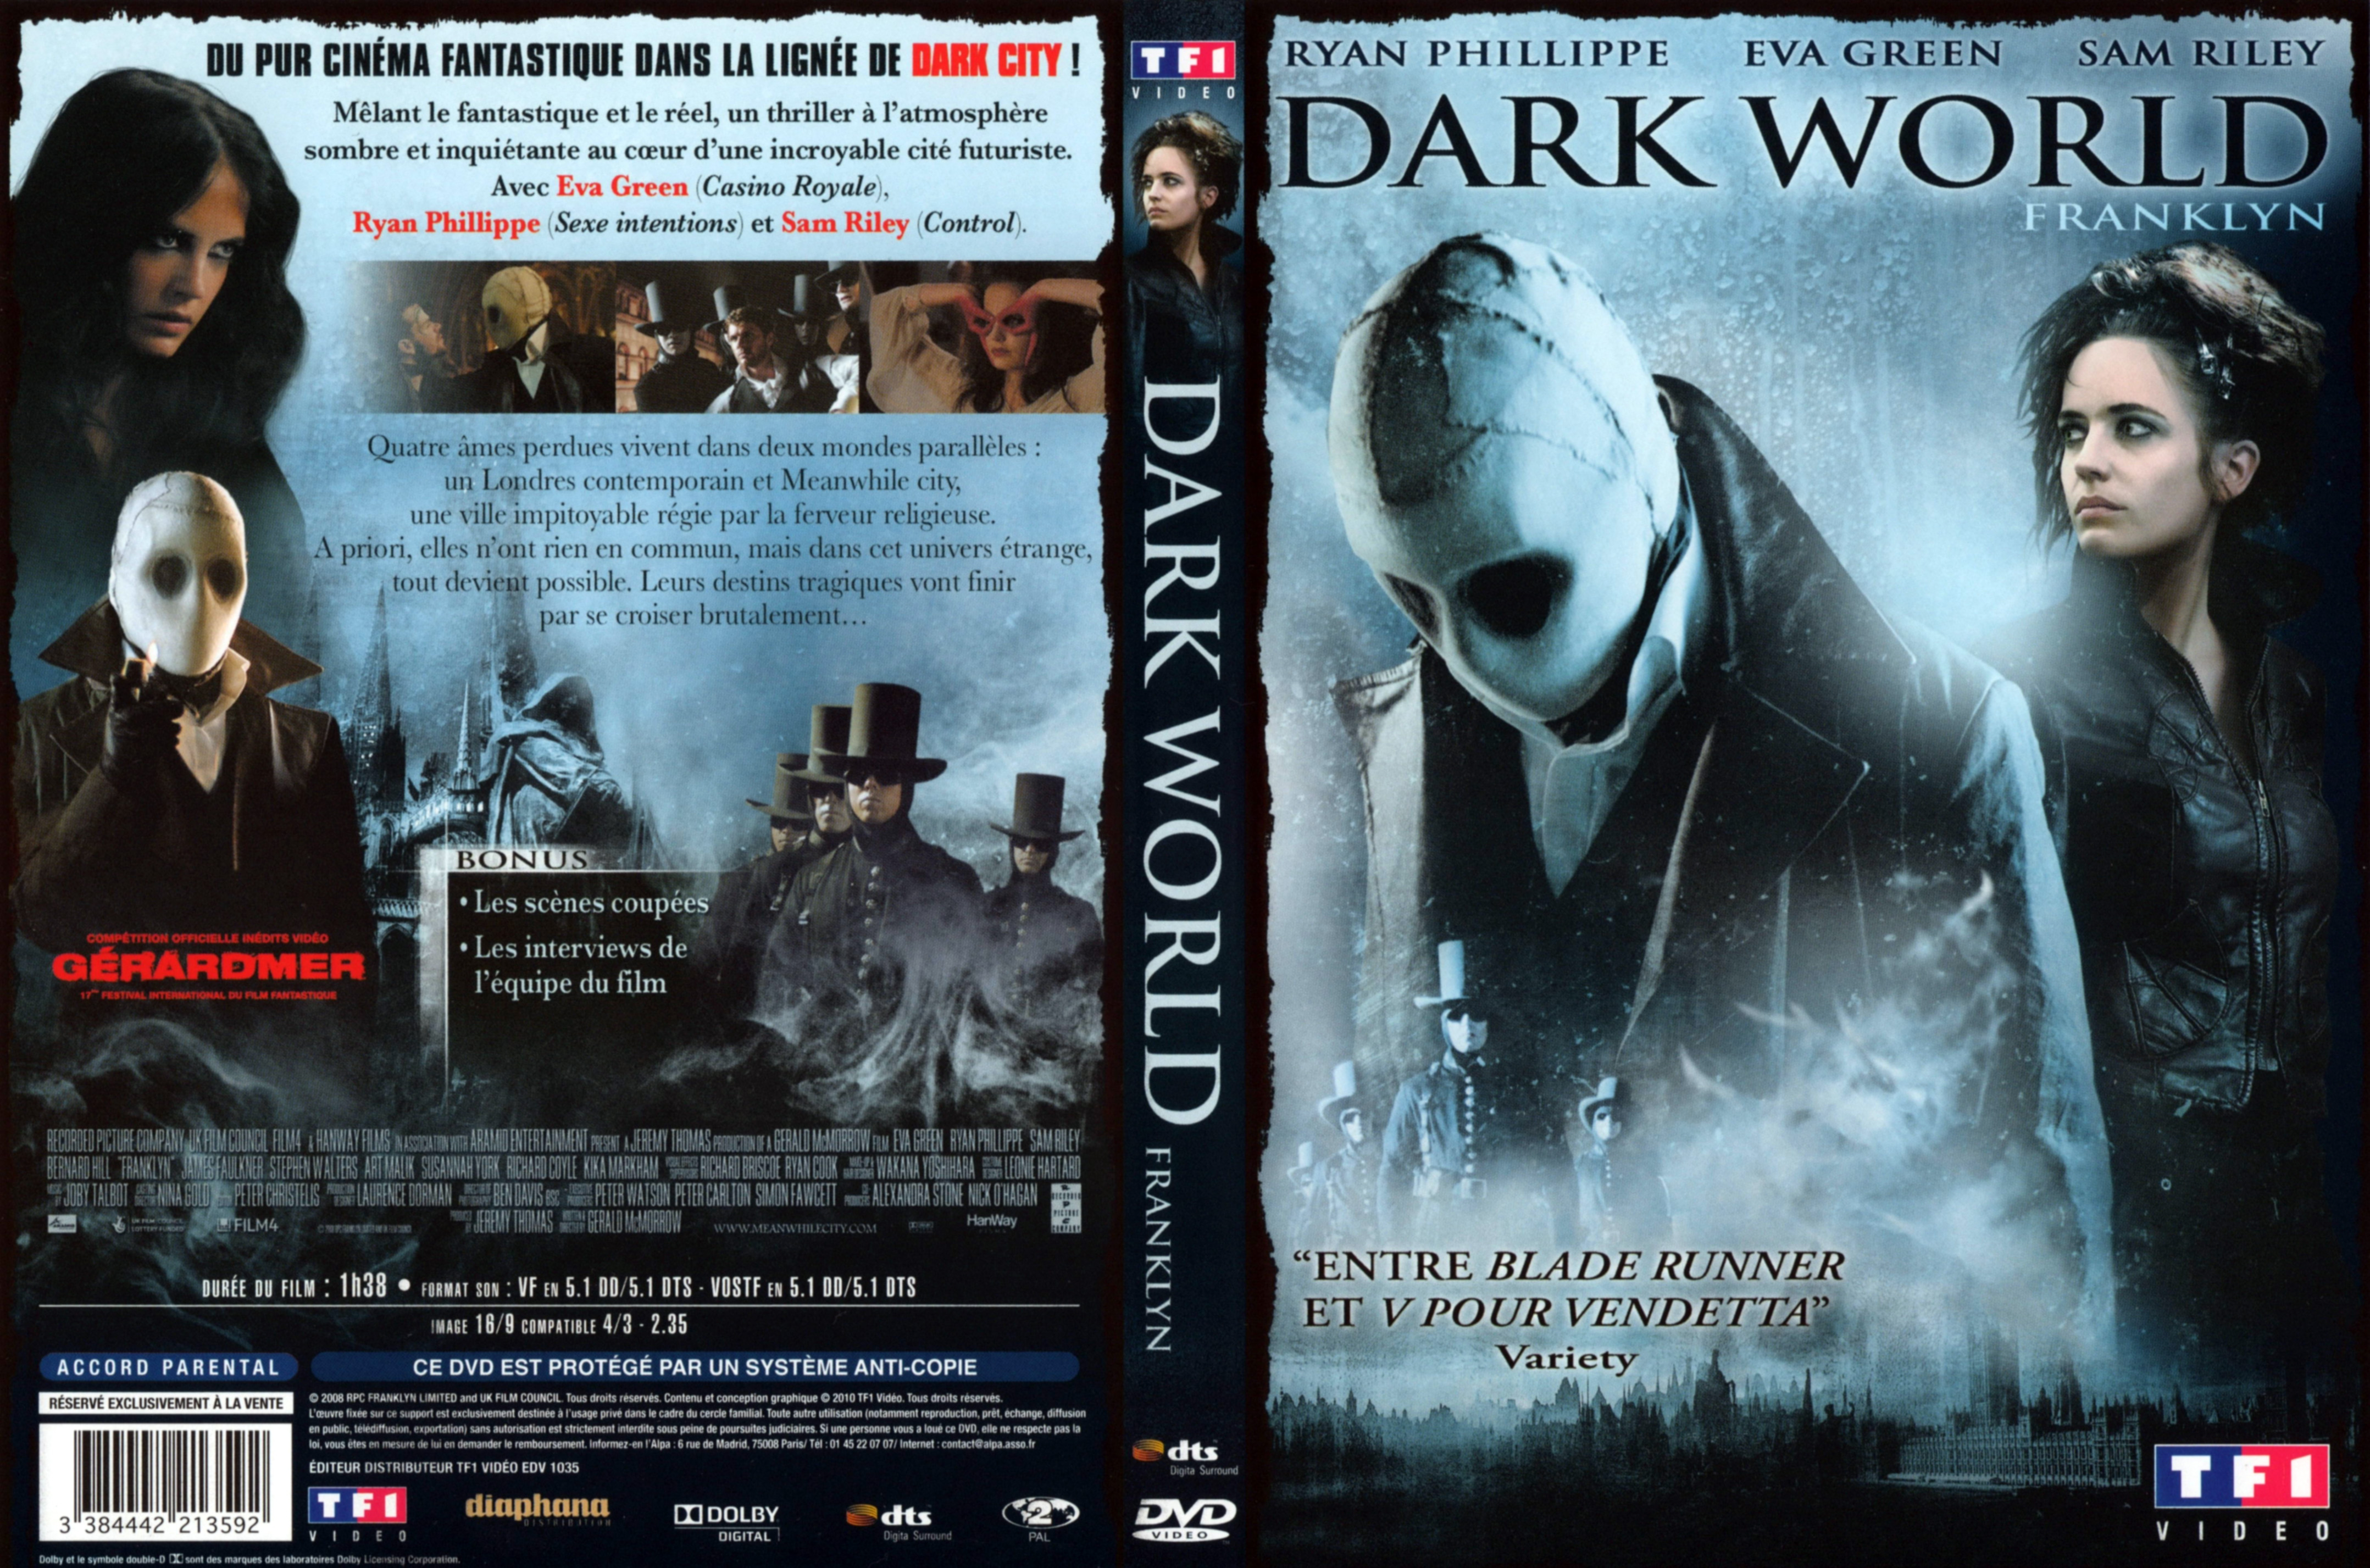 Jaquette DVD Dark world